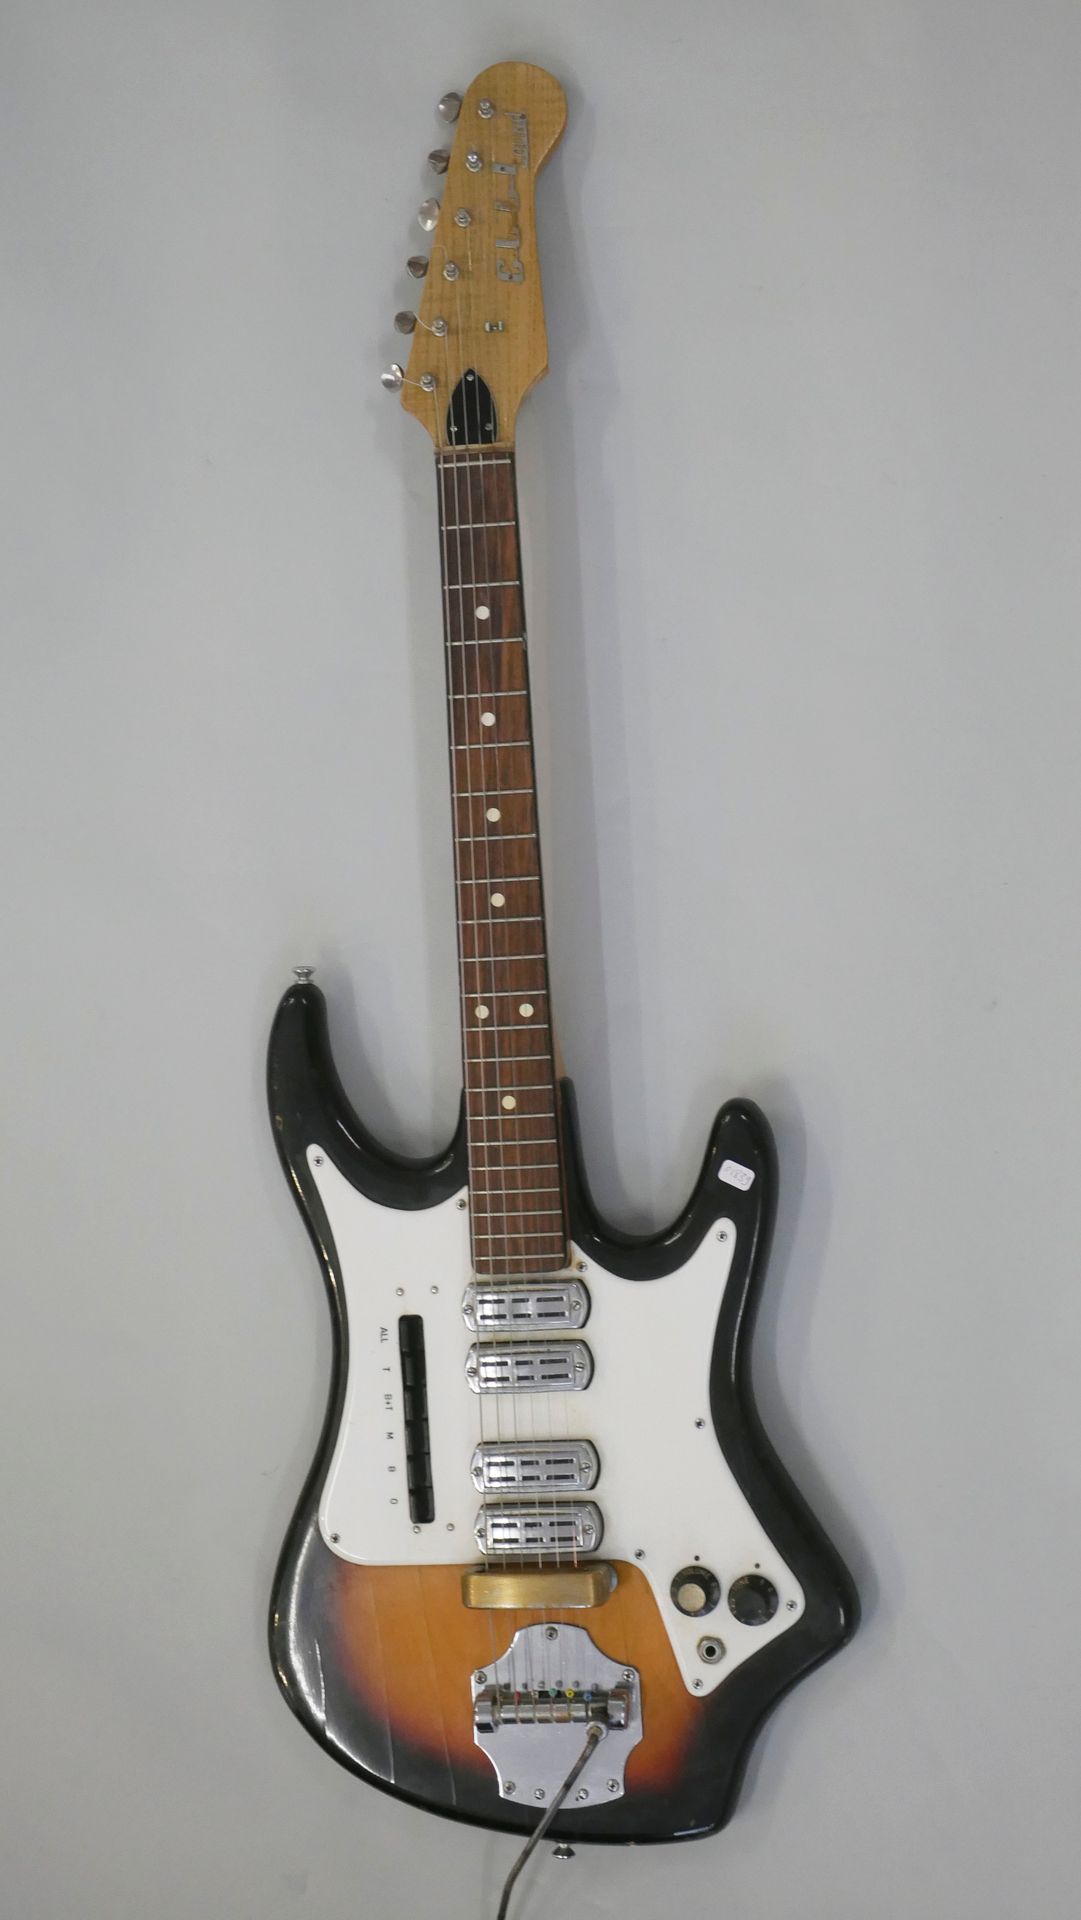 Null Crucianelli电吉他模型Elli的声音日期可能是1962年。

按原样出售。



只要拍卖行有必要的连接，这些仪器都可以在展览期间进行现场测&hellip;